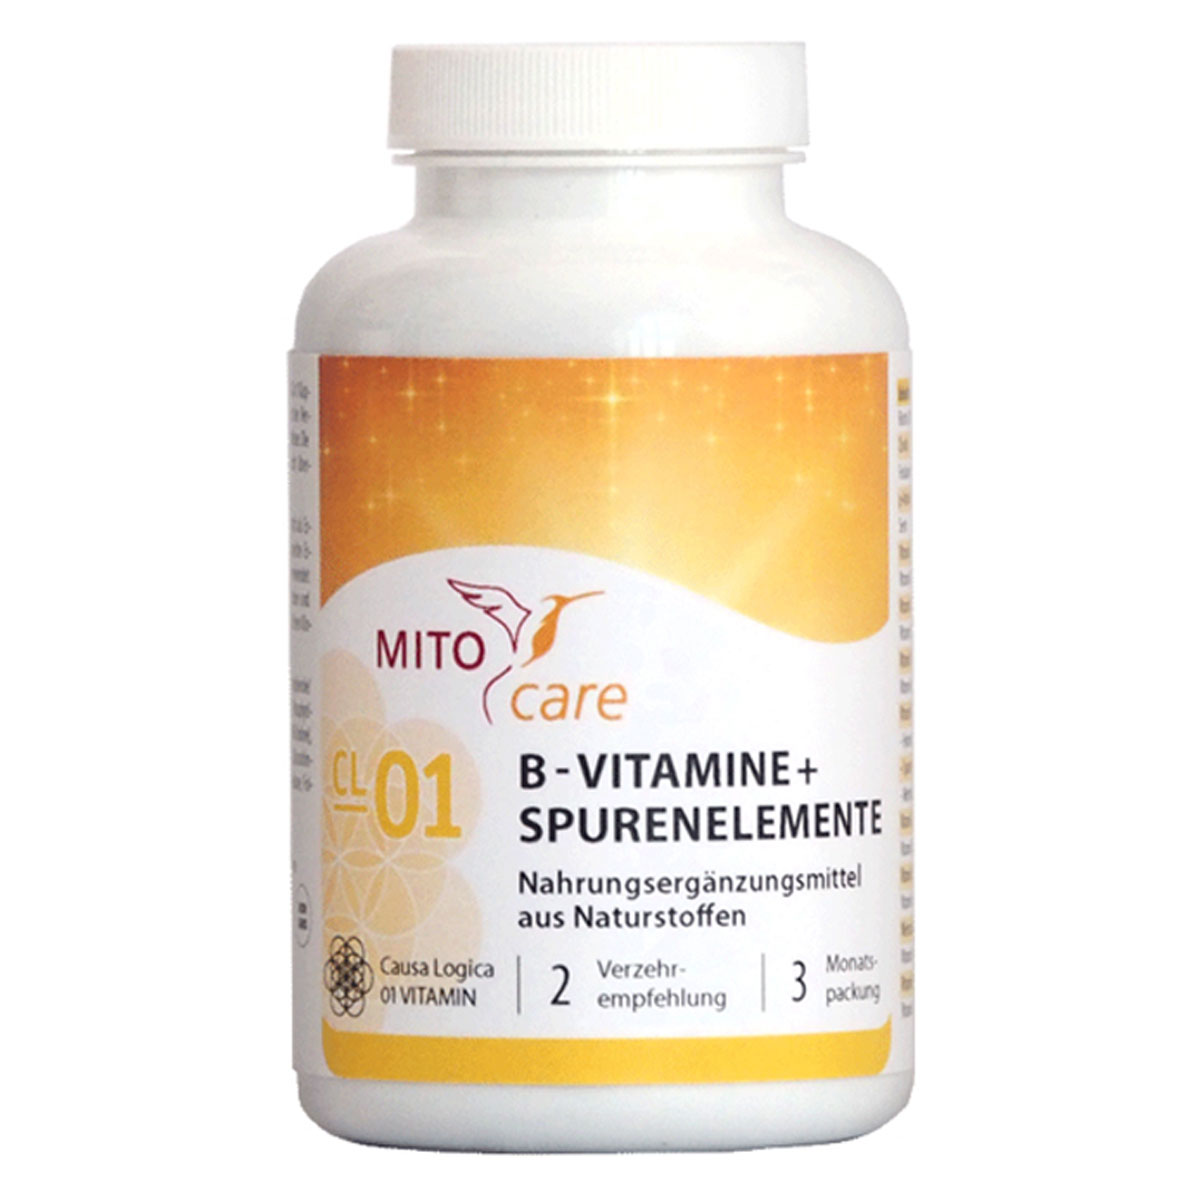 MITOcare® B-VITAMINE + Spurenelemente - 180 Kapseln